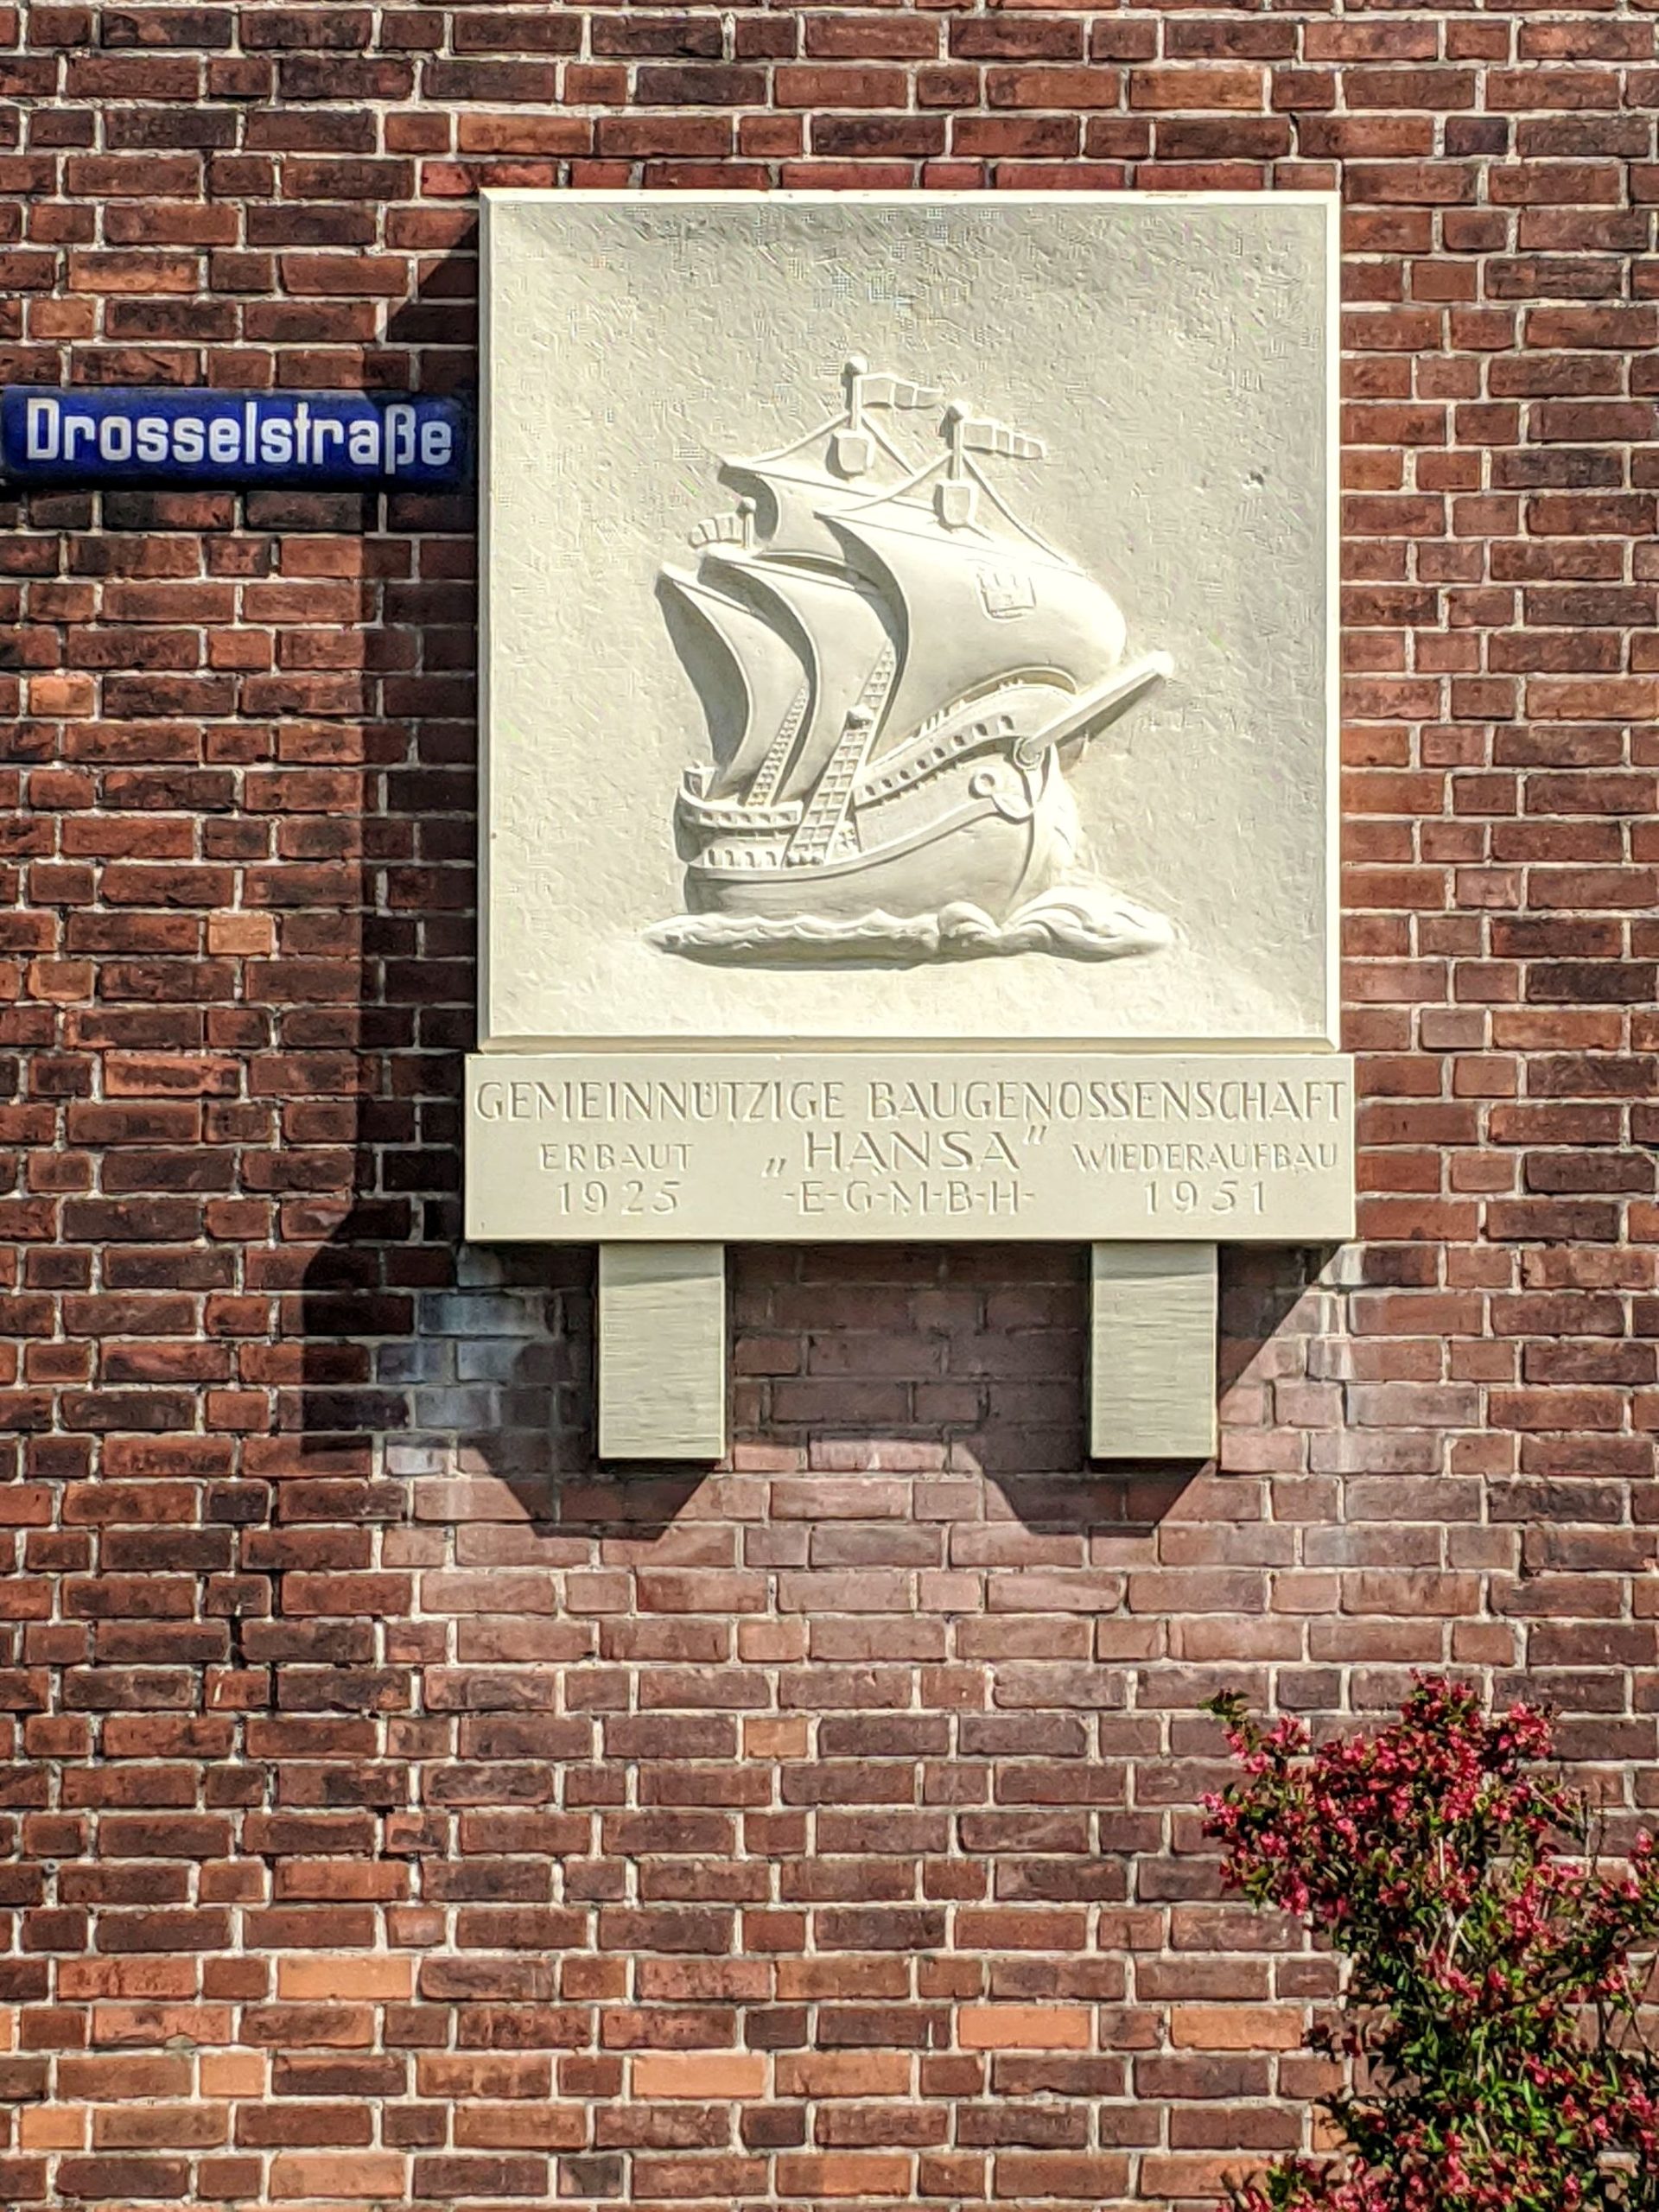 So wie diese Plakette der Hansa erinnern überall in Hamburg Schilder an Zerstörung und Wiederaufbau alter genossenschaftlicher Häuser.